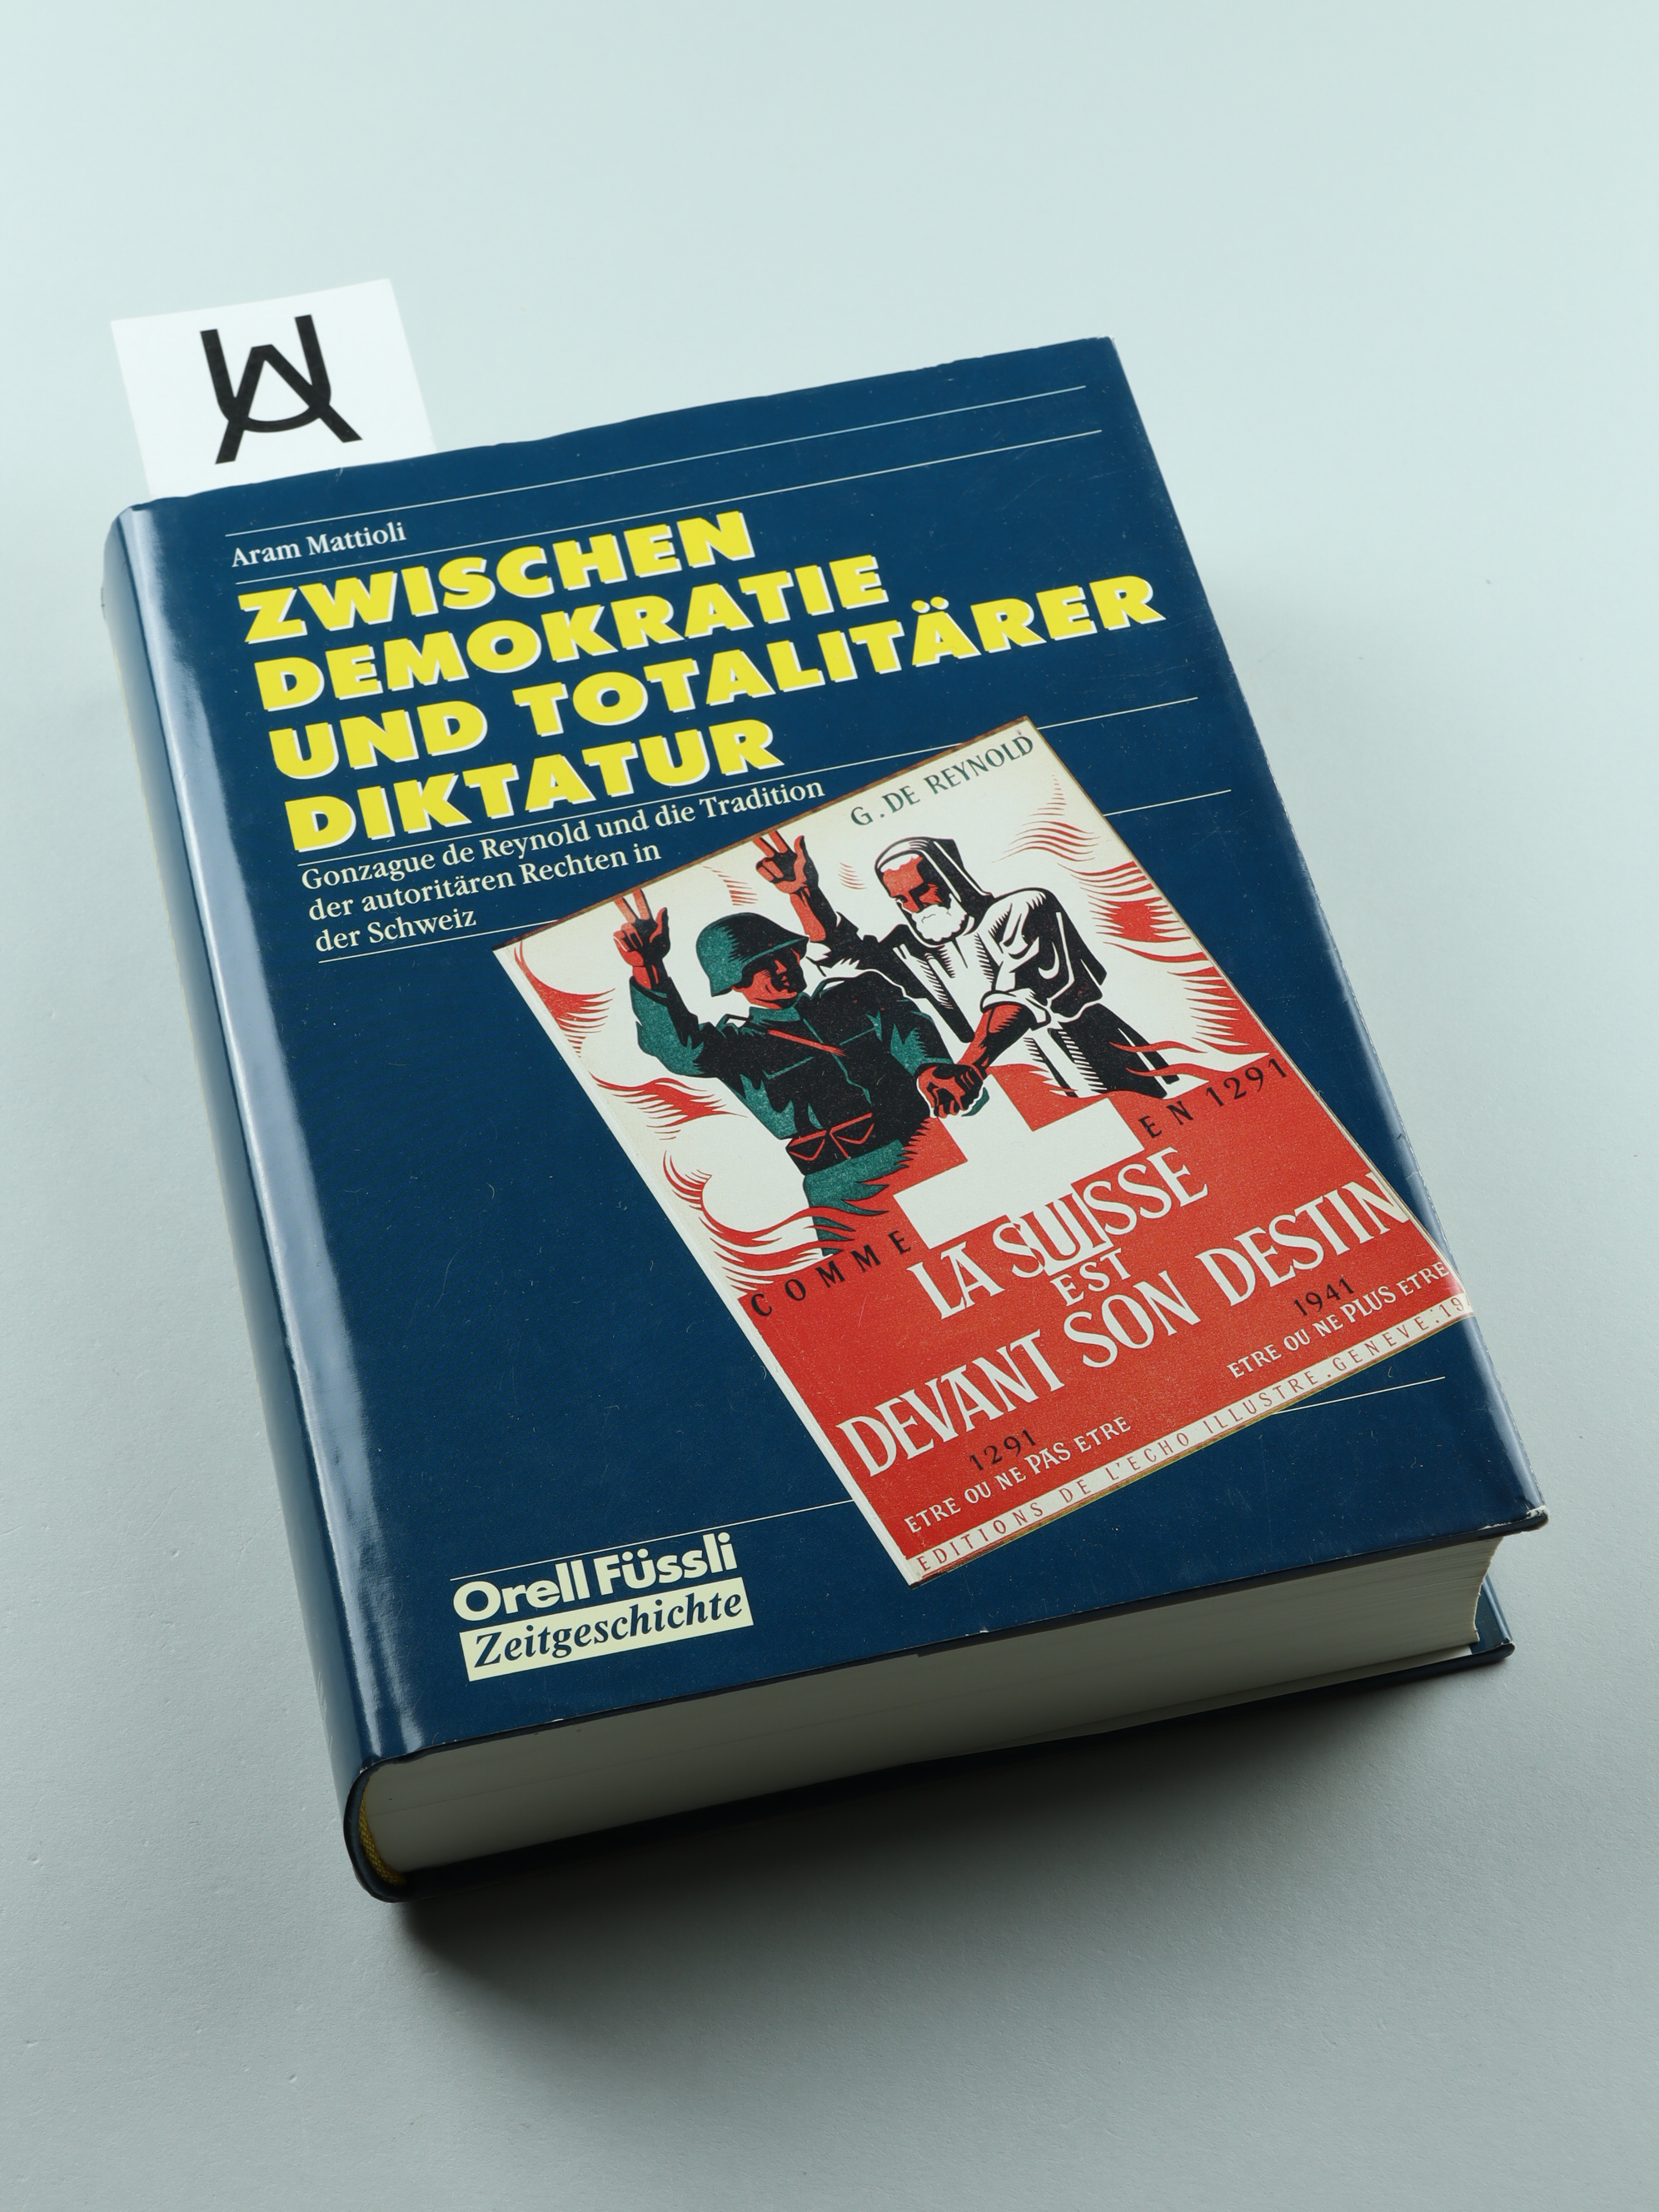 Zwischen Demokratie und totalitärer Diktatur. Gonzague de Reynold und die Tradition der autoritären Rechten in der Schweiz. - Mattioli, Aram